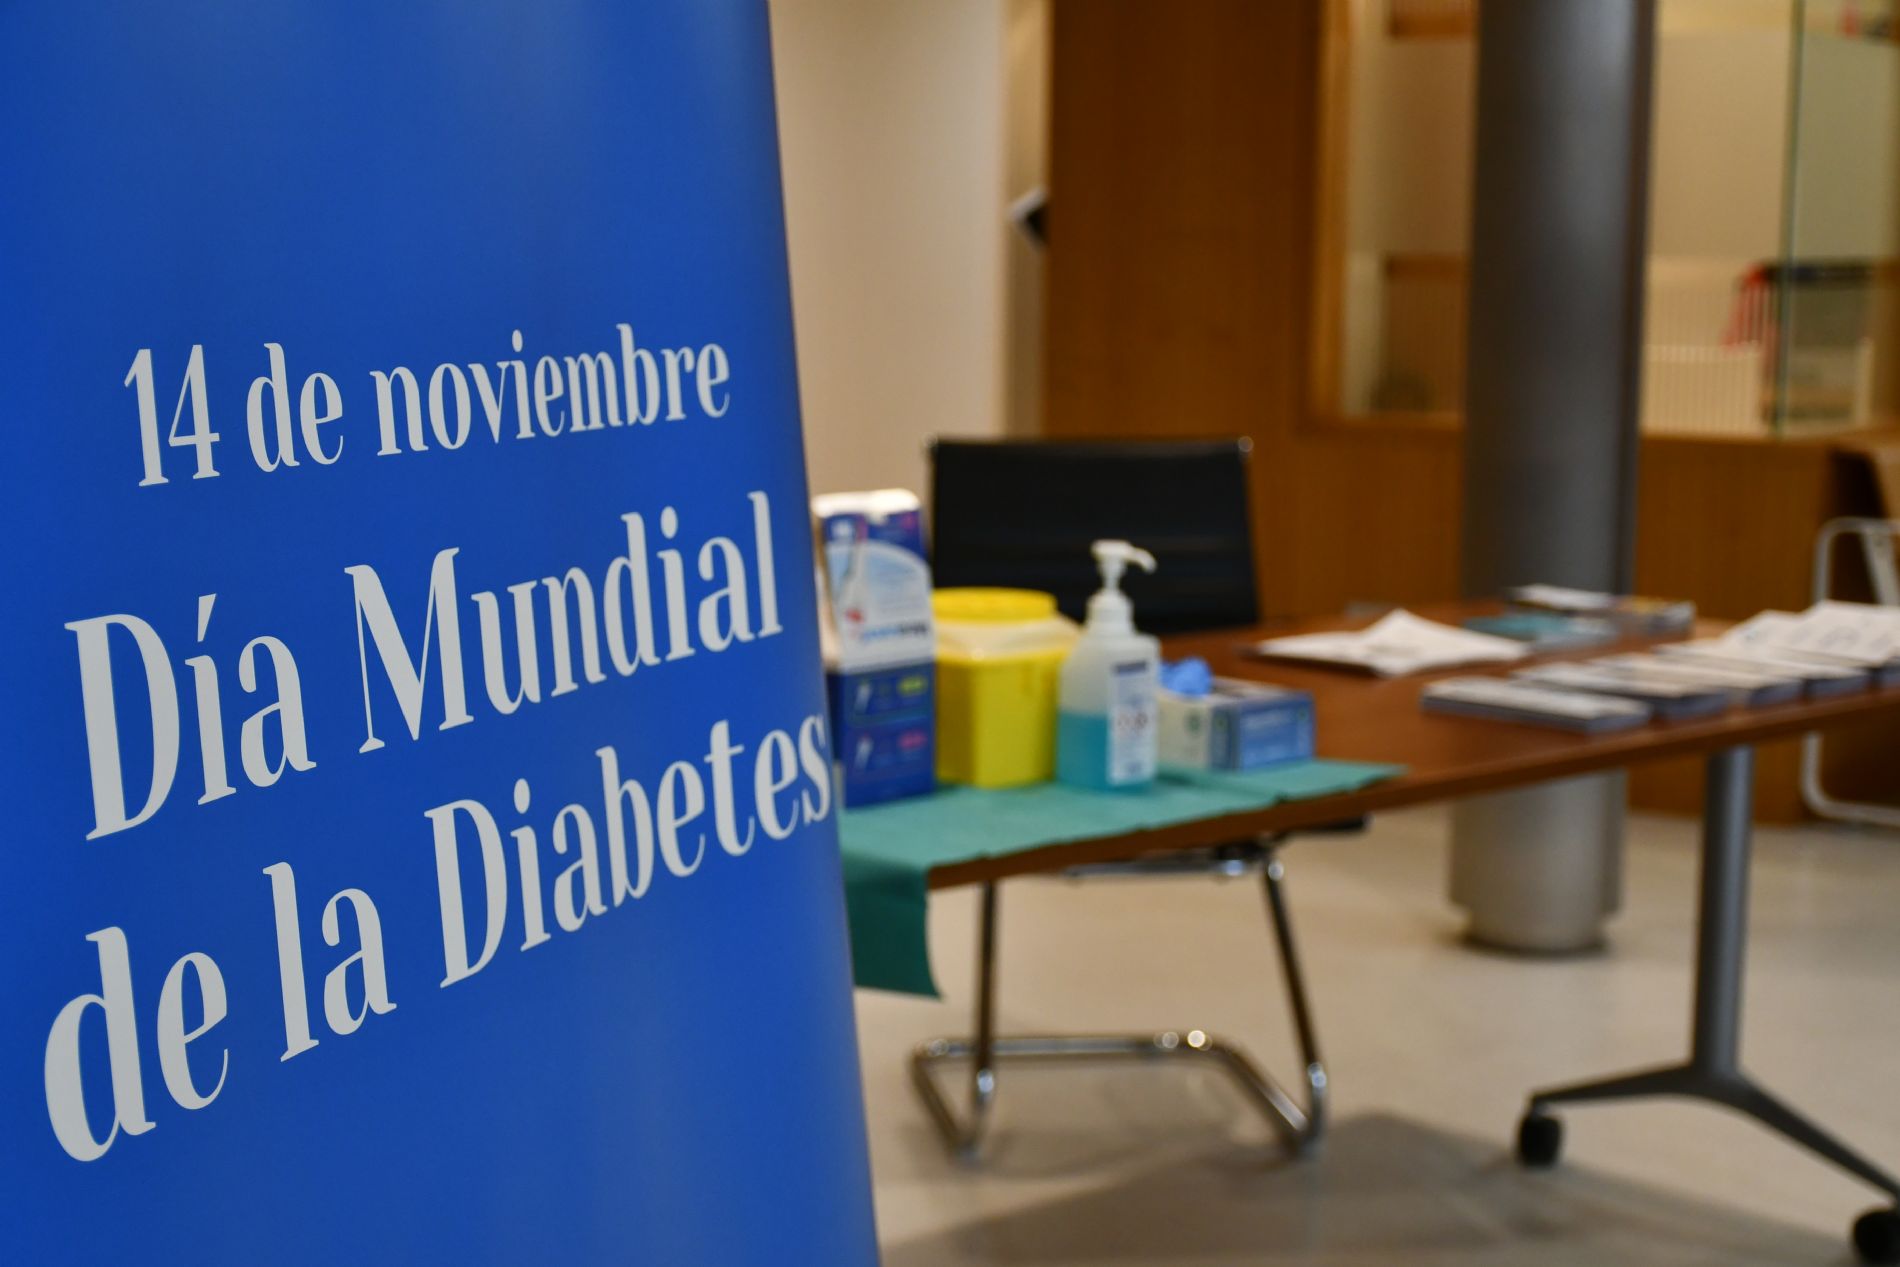 Medicina Interna celebra el Día Mundial de la Diabetes con revisiones gratuitas para los pacientes